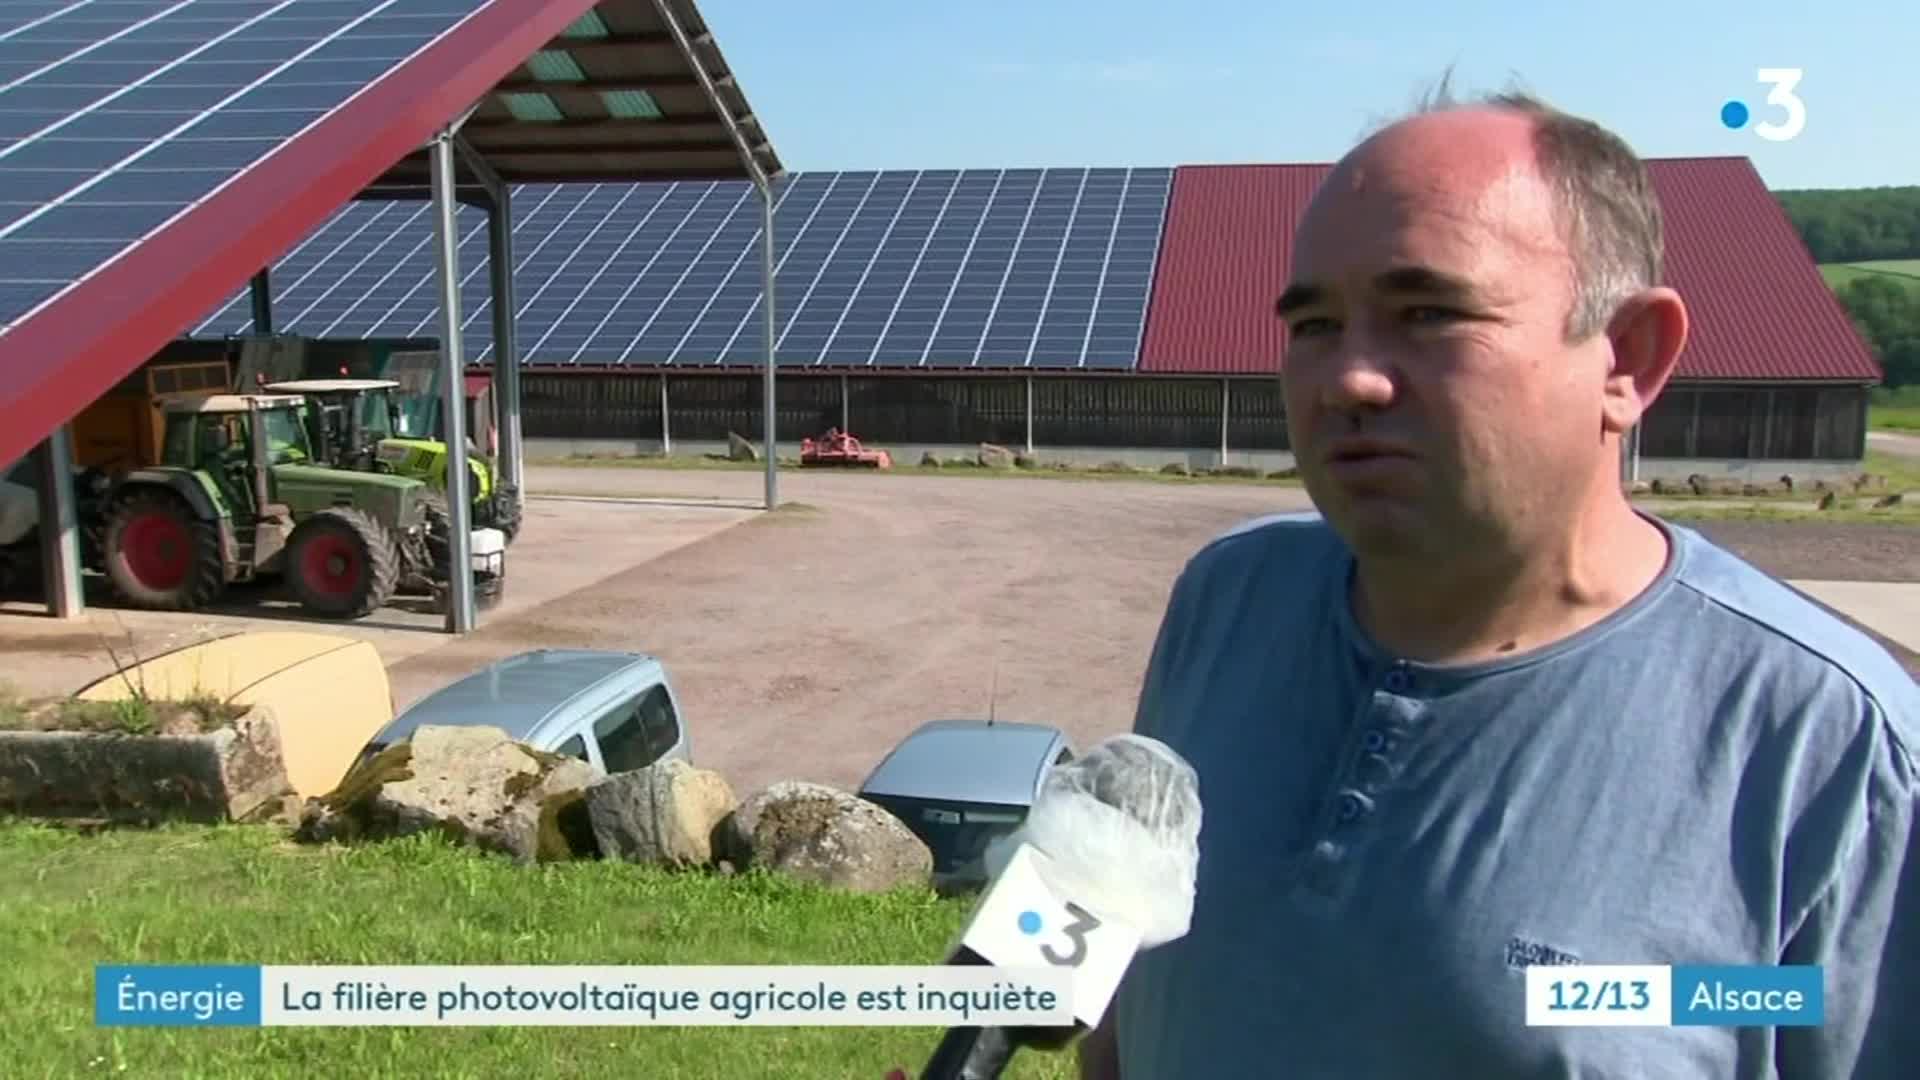 12/13 - F3 Alsace - 12-06-2021 - Photovoltaïque, l'arnaque